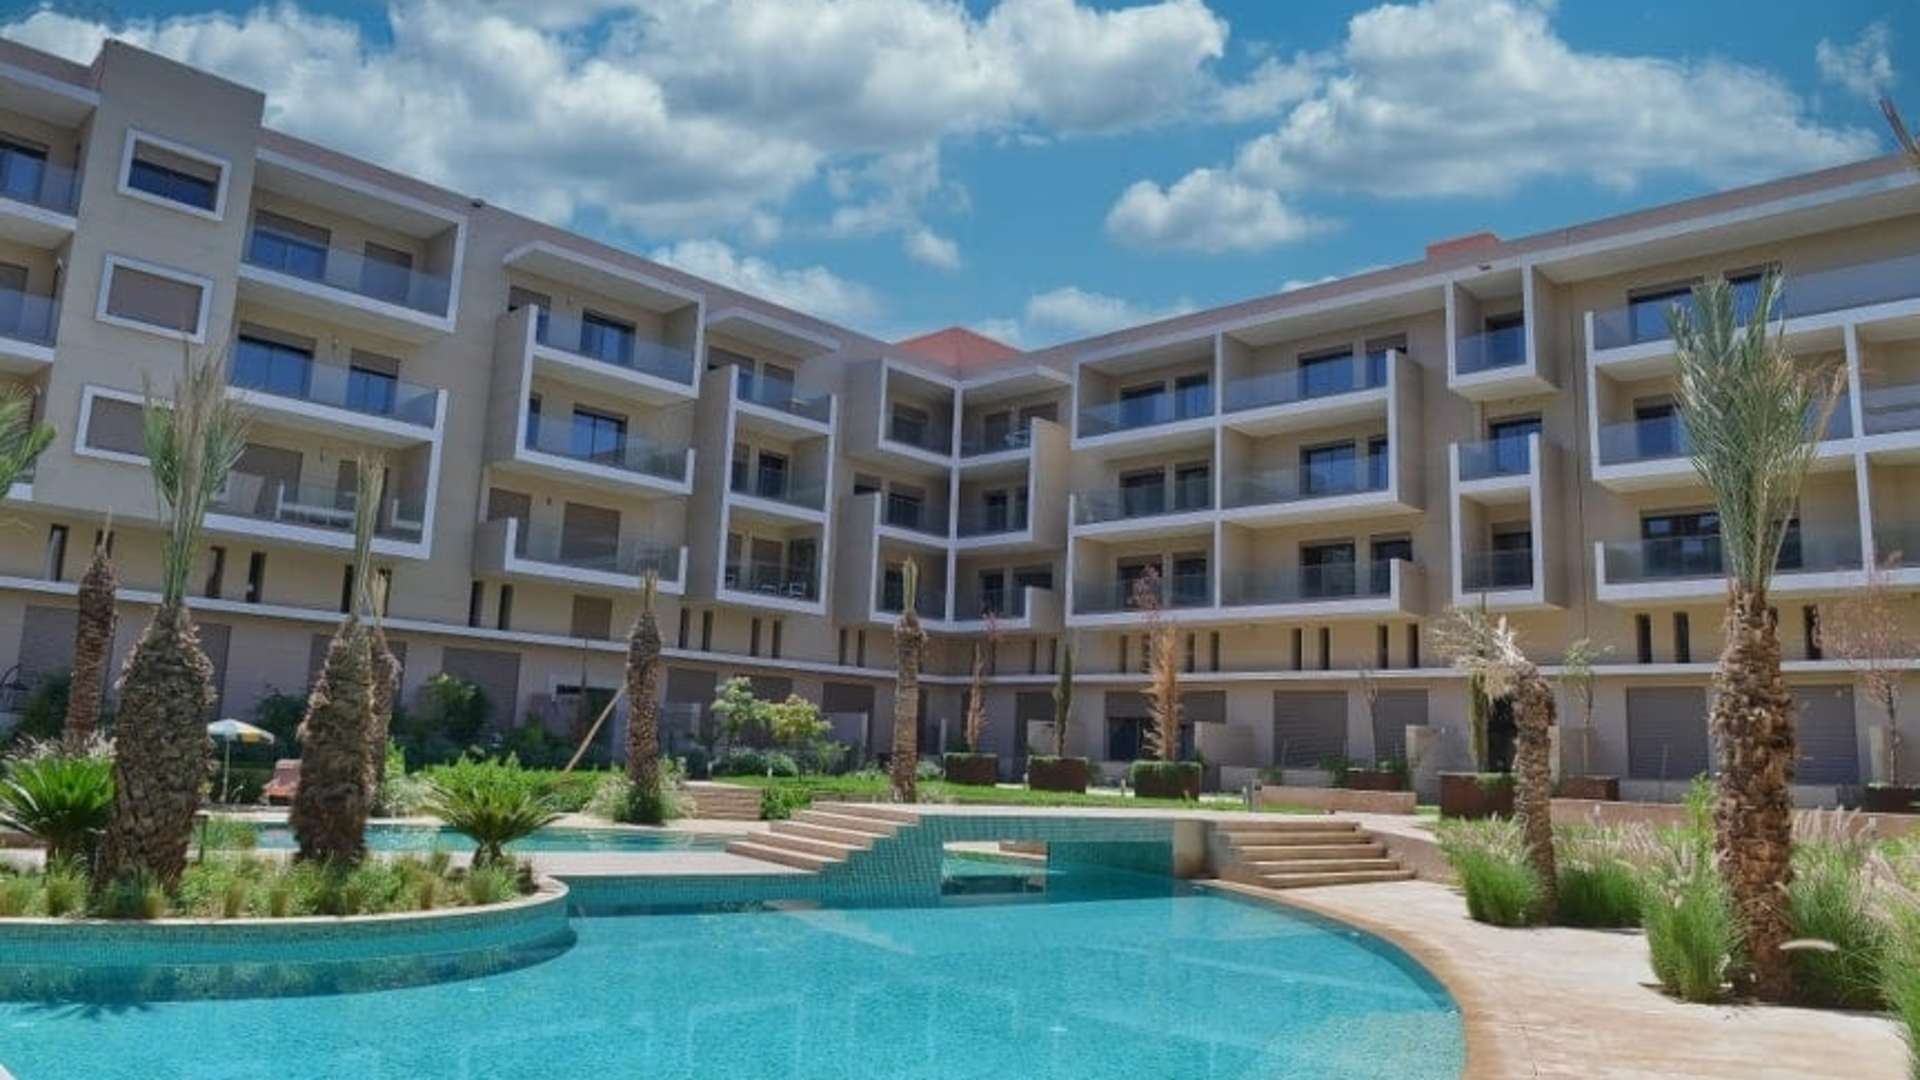 Vente,Duplex,Magnifique duplex de 2ch salon dans une belle résidence avec piscine à Marrakech,Marrakech,Route Casablanca